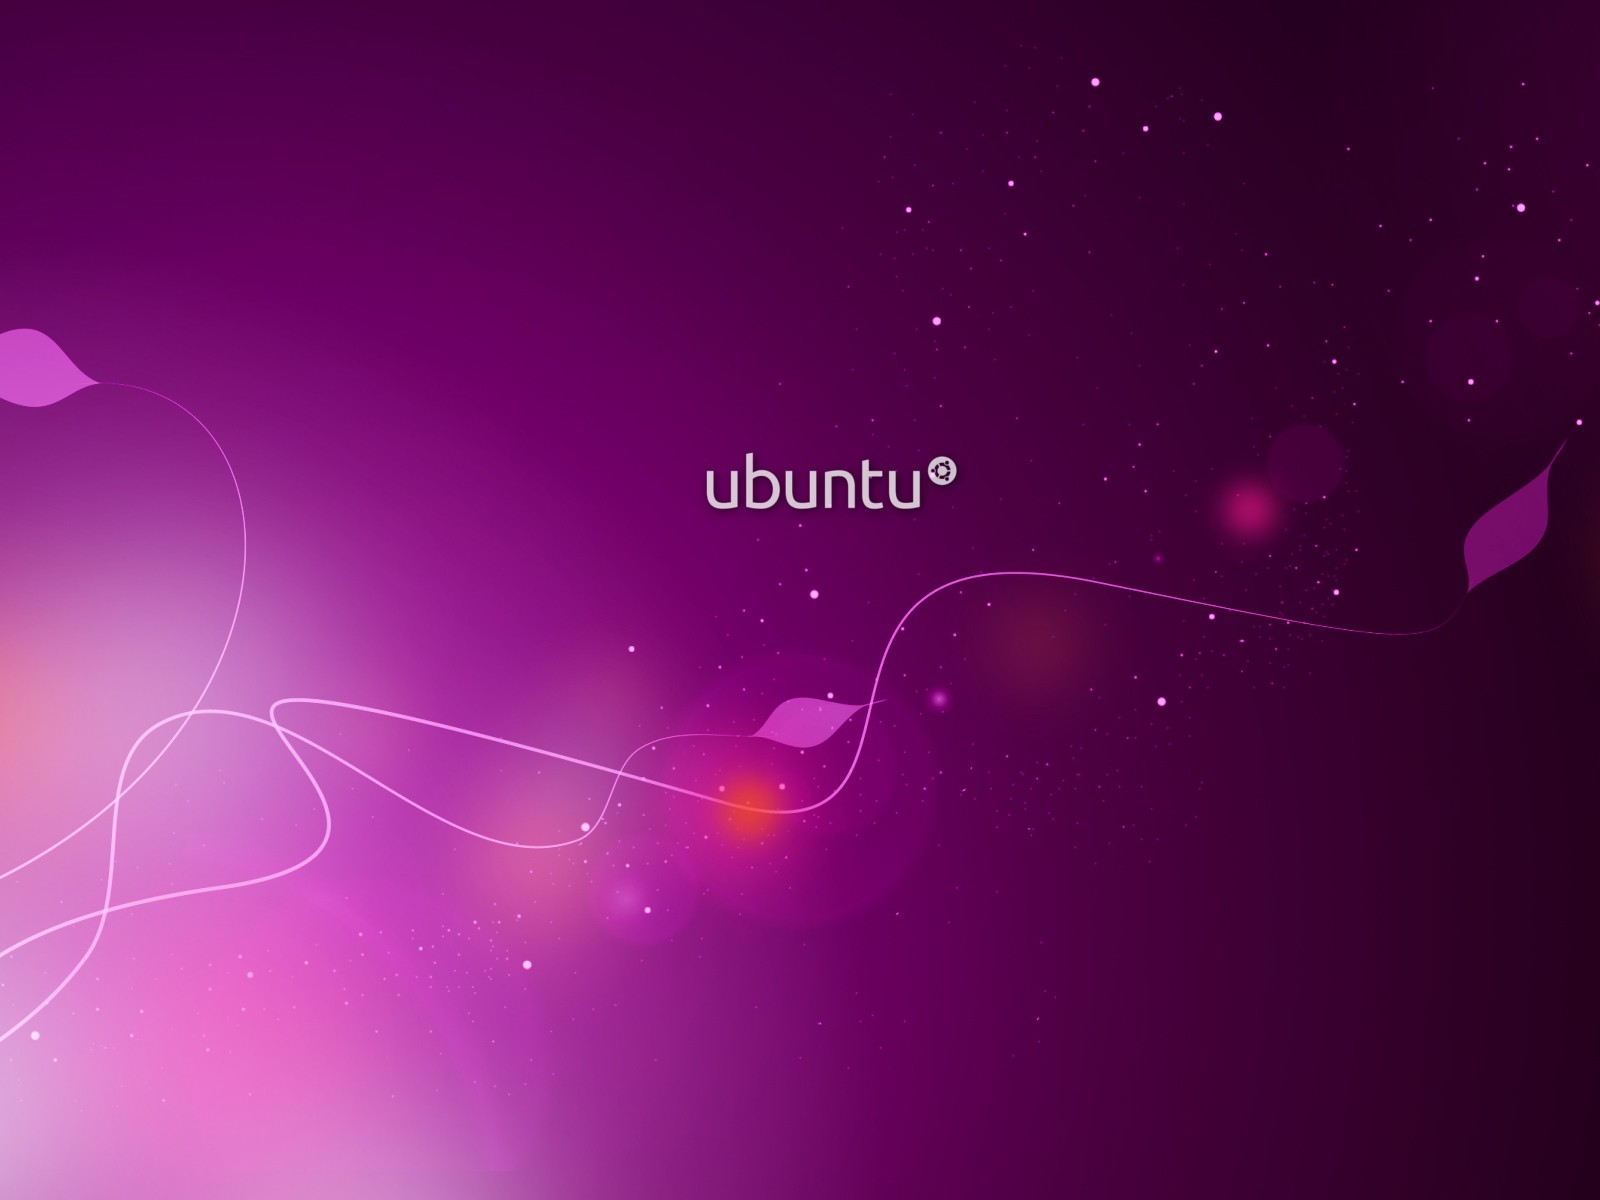 http://3.bp.blogspot.com/-l4GlrpPS91o/TwwkB_R0oPI/AAAAAAAABRw/CAM7AAtY628/s1600/Ubuntu+Wallpaper+2.jpeg